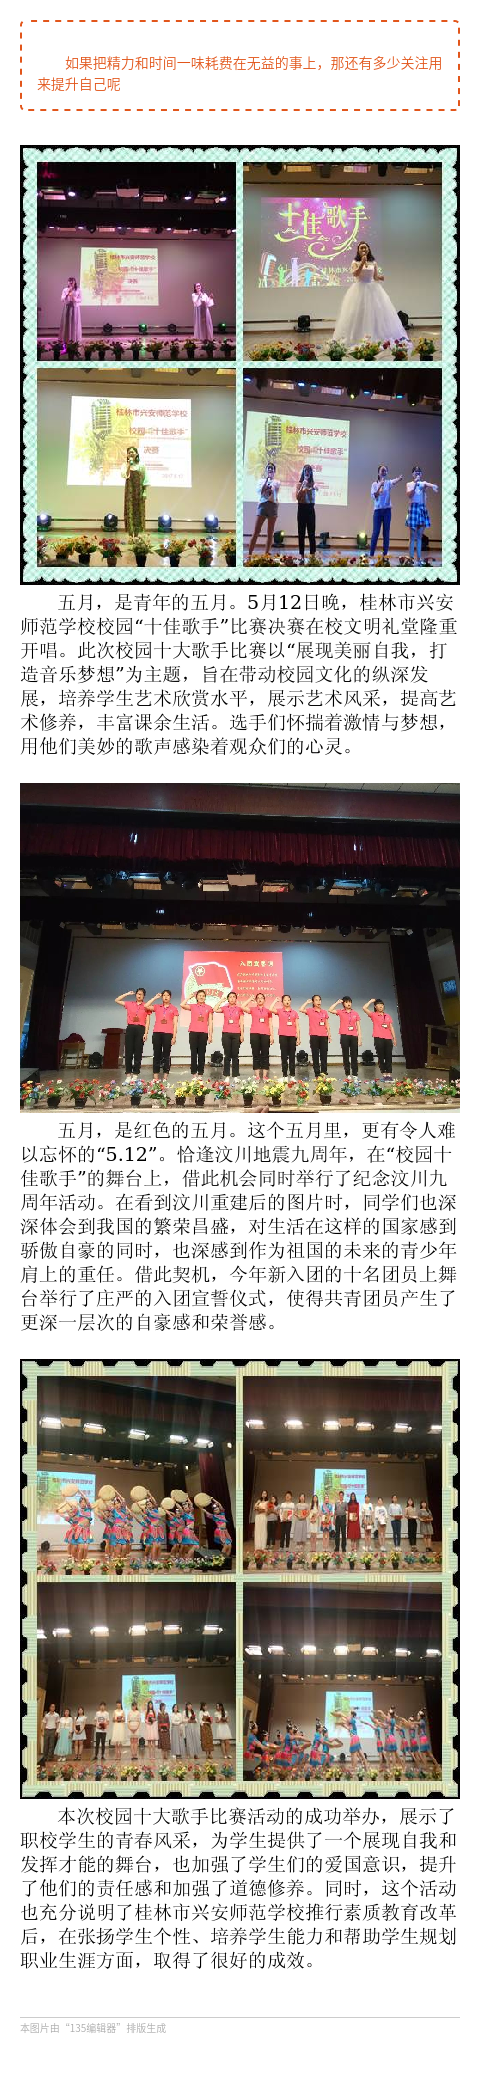 桂林市兴安师范举行校园“十佳歌手”比赛暨入团宣誓仪式活动